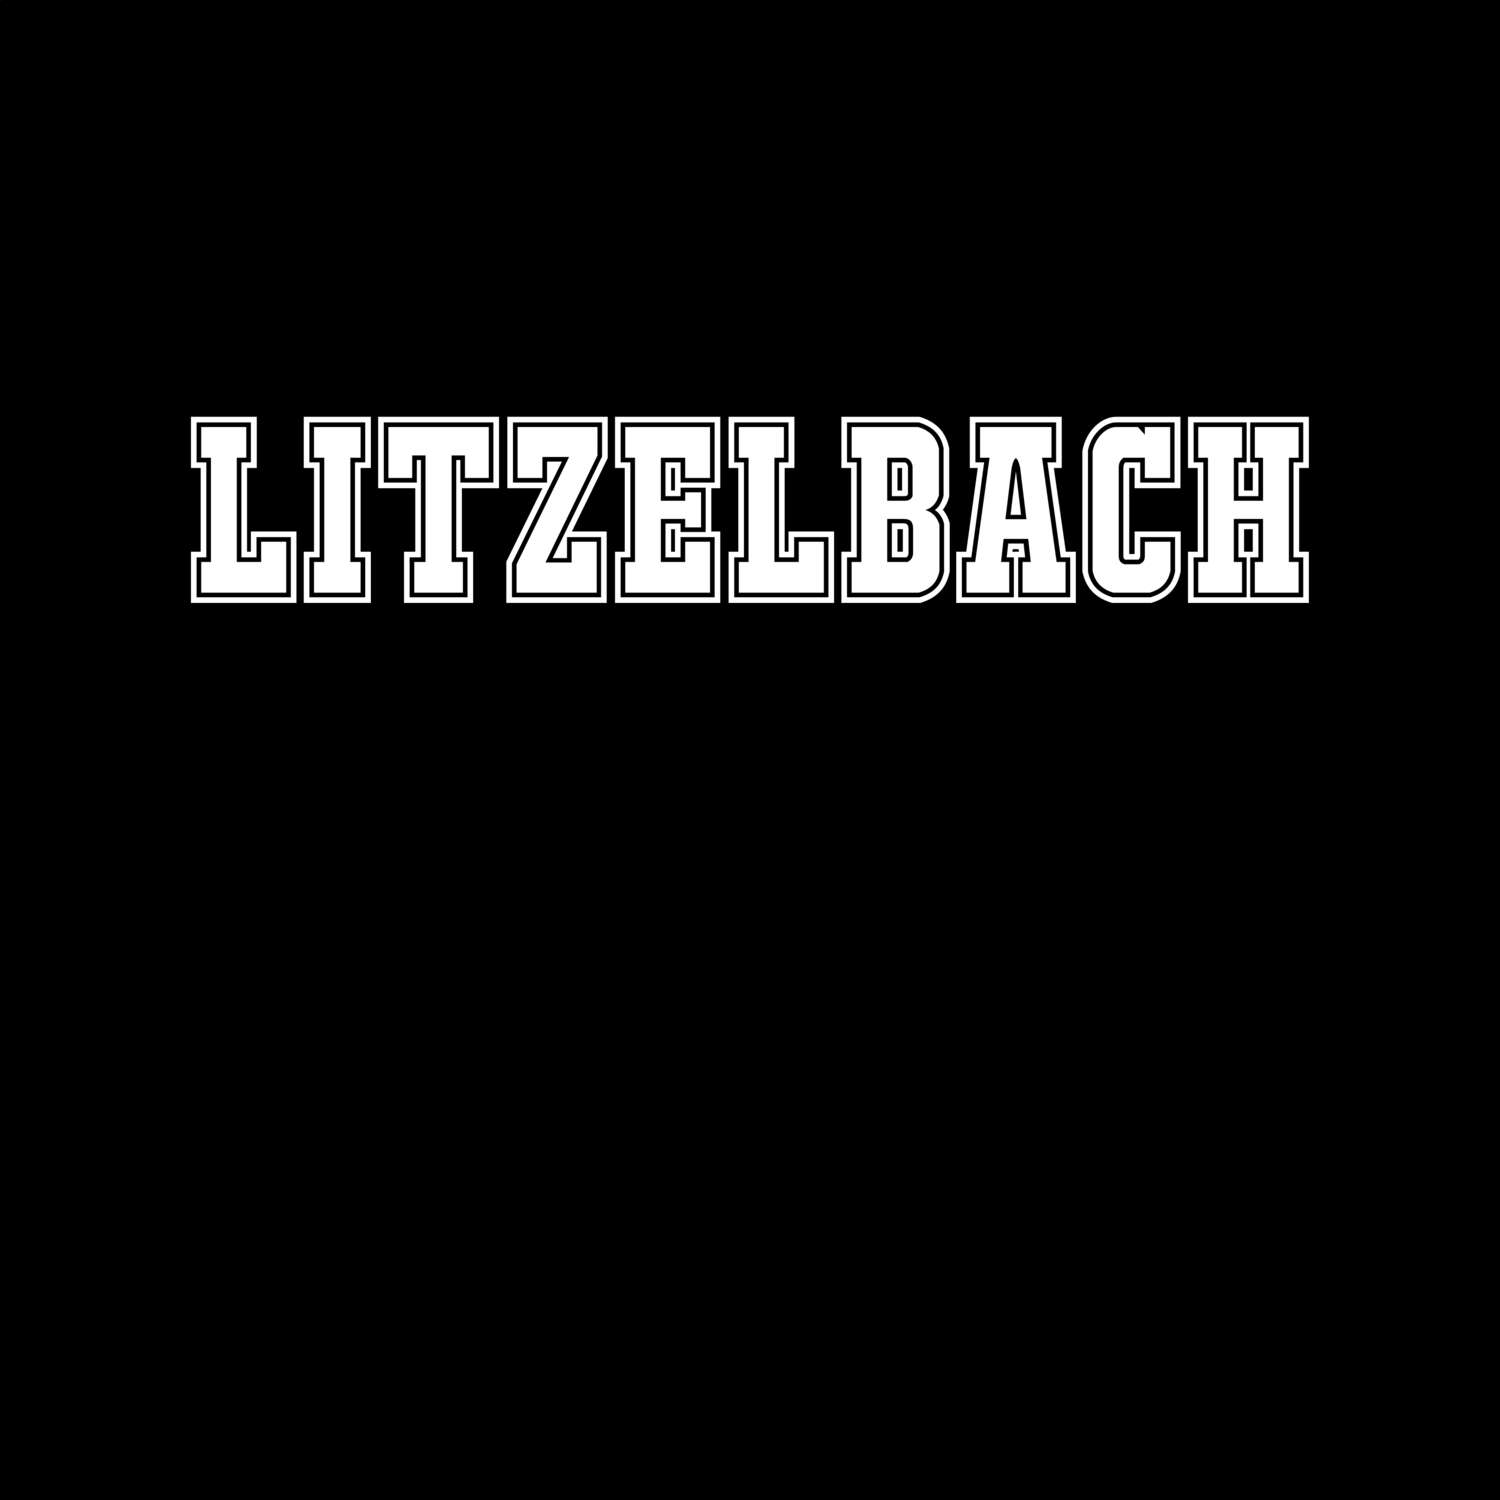 Litzelbach T-Shirt »Classic«